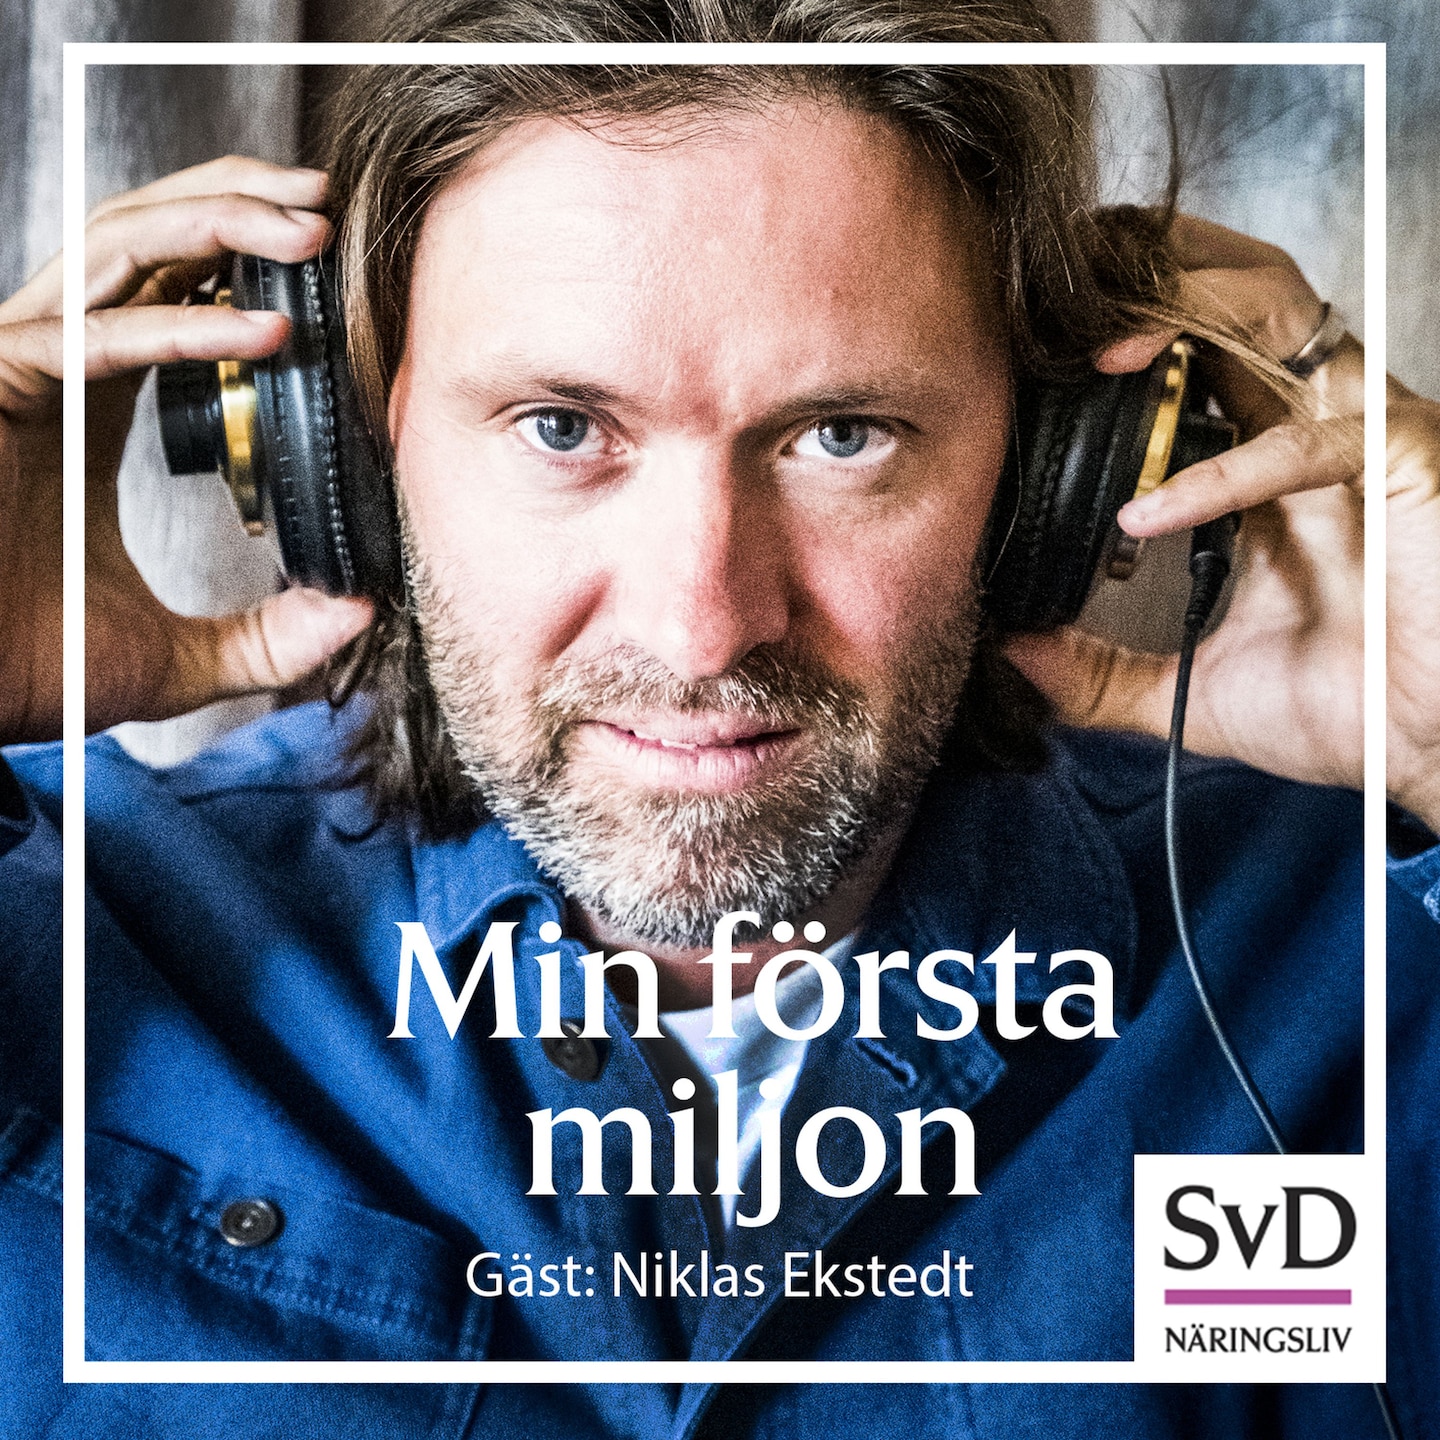 19. Niklas Ekstedt - stjärnkock som vill stoppa rovdrift i havet - med vapen om det behövs.